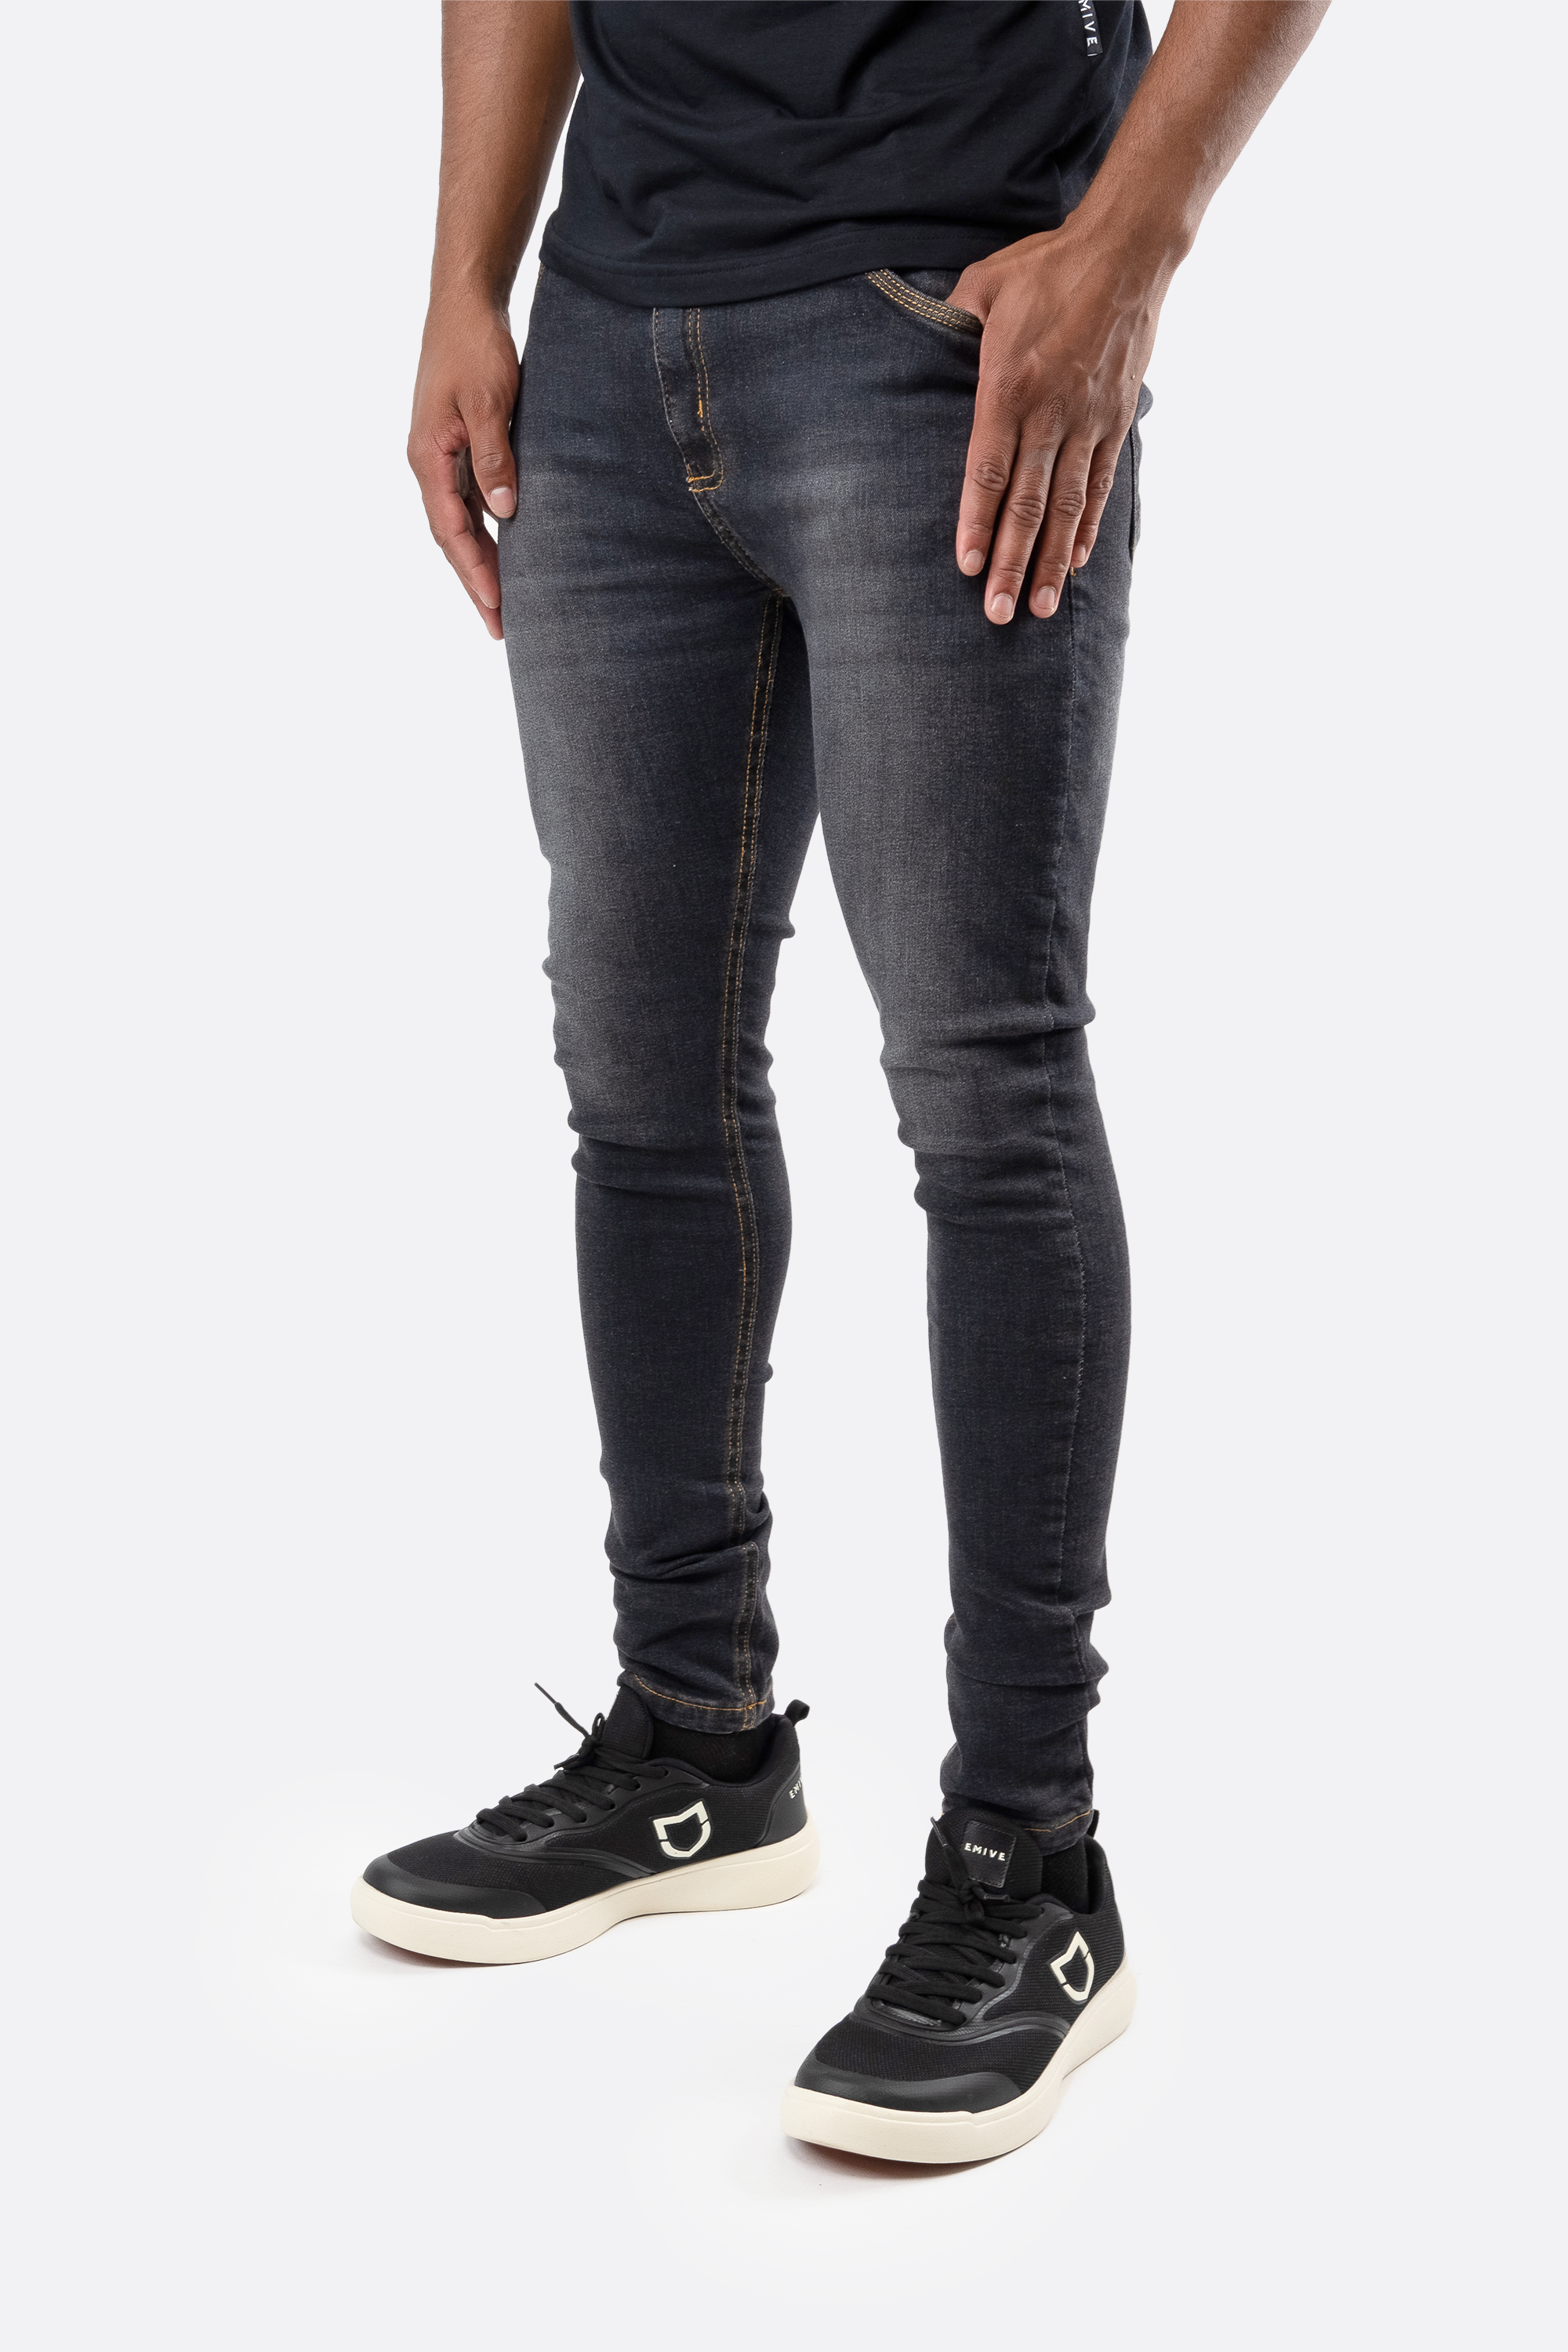 Calça Jeans Emive Skinny Trademark Preto